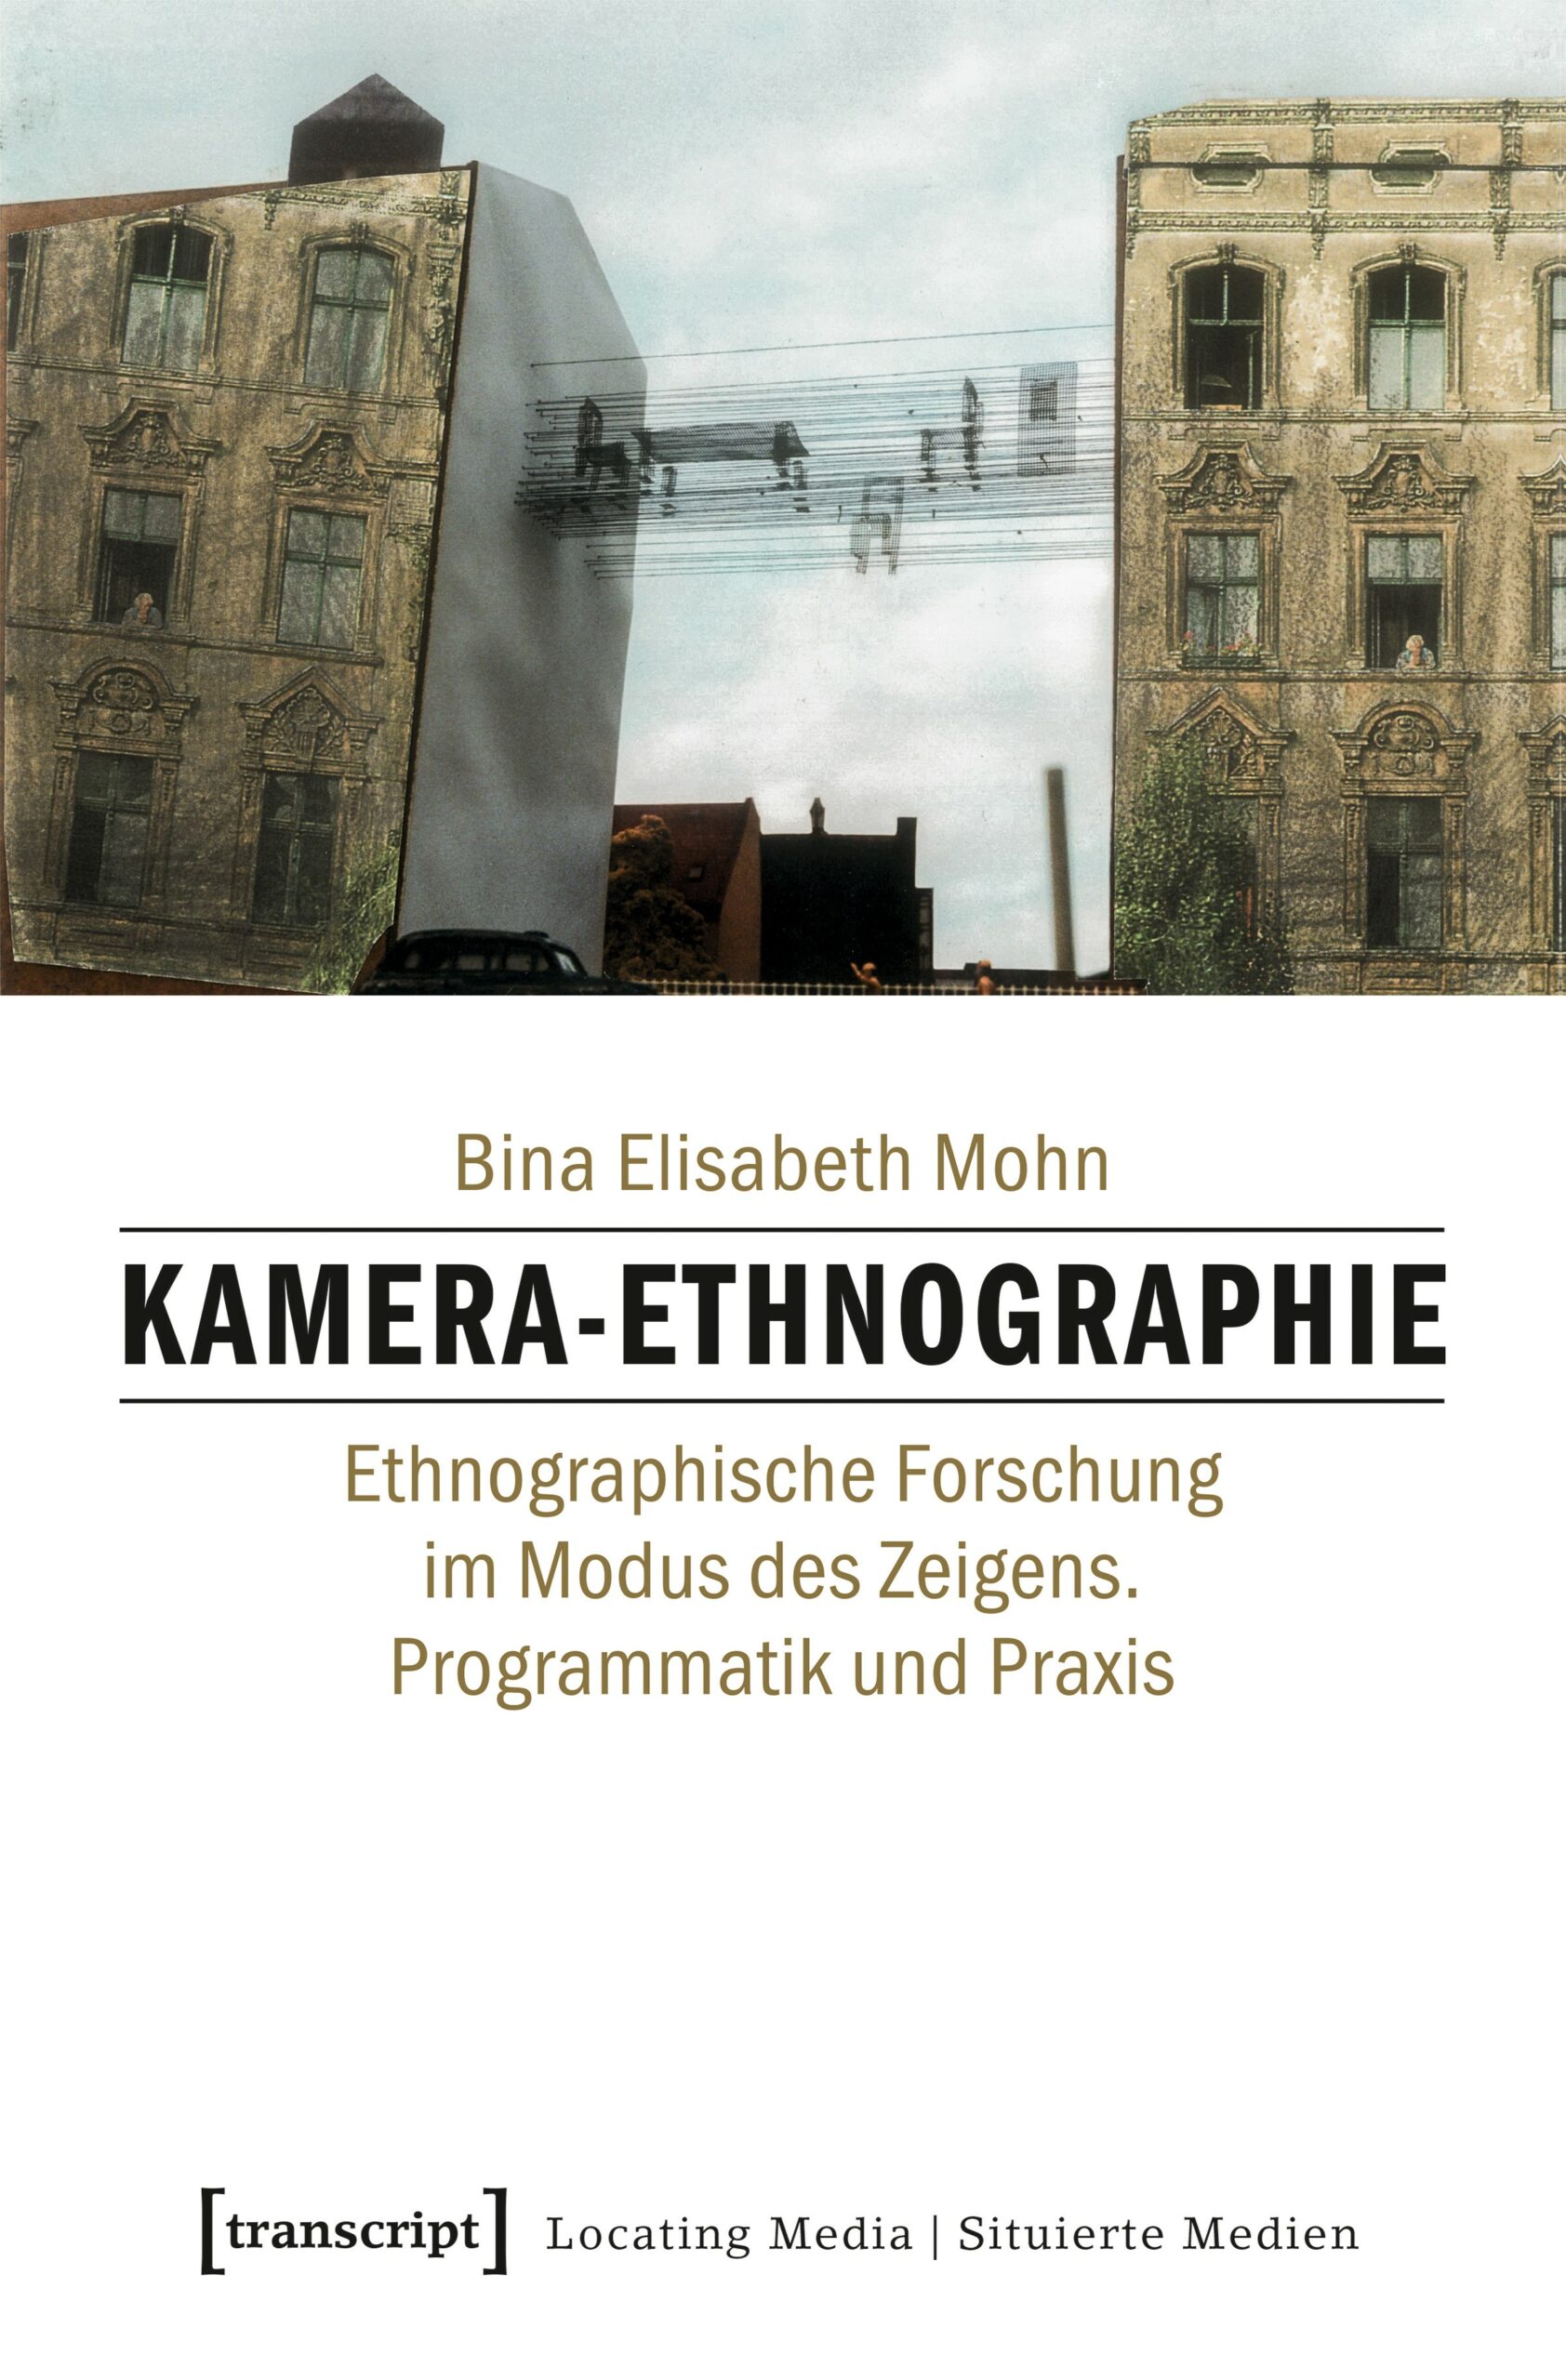 Kamera-Ethnographie. Ethnographische Forschung im Modus des Zeigens. Programmatik und Praxis. Mohn, Bina Elisabeth. 2023